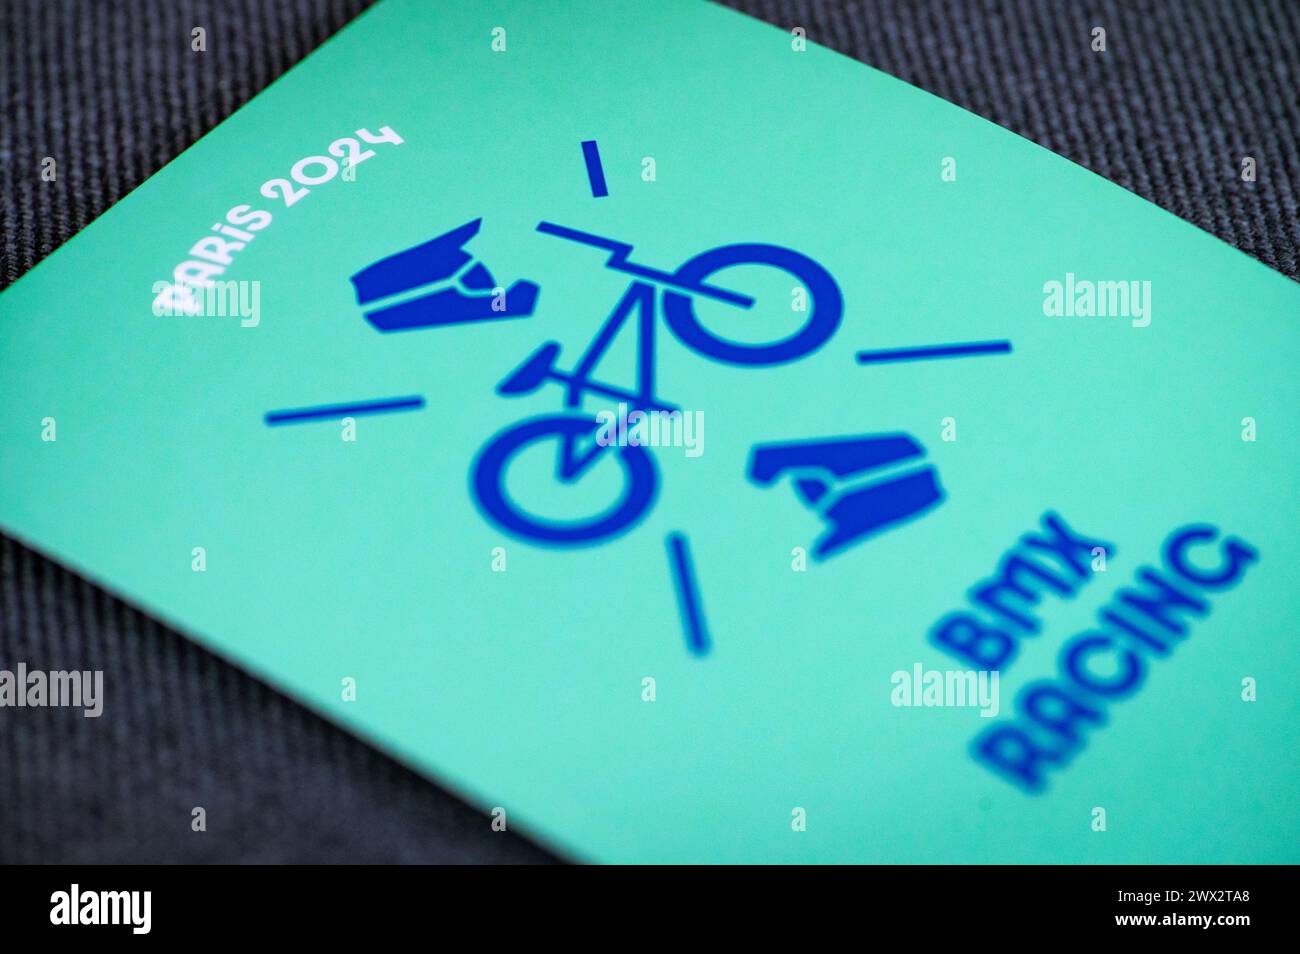 BMX-Rennpiktogramm für die olympischen sommerspiele 2024 in paris. Offizielle Ikone des Sports beim olympischen Spiel in Paris 24 Stockfoto